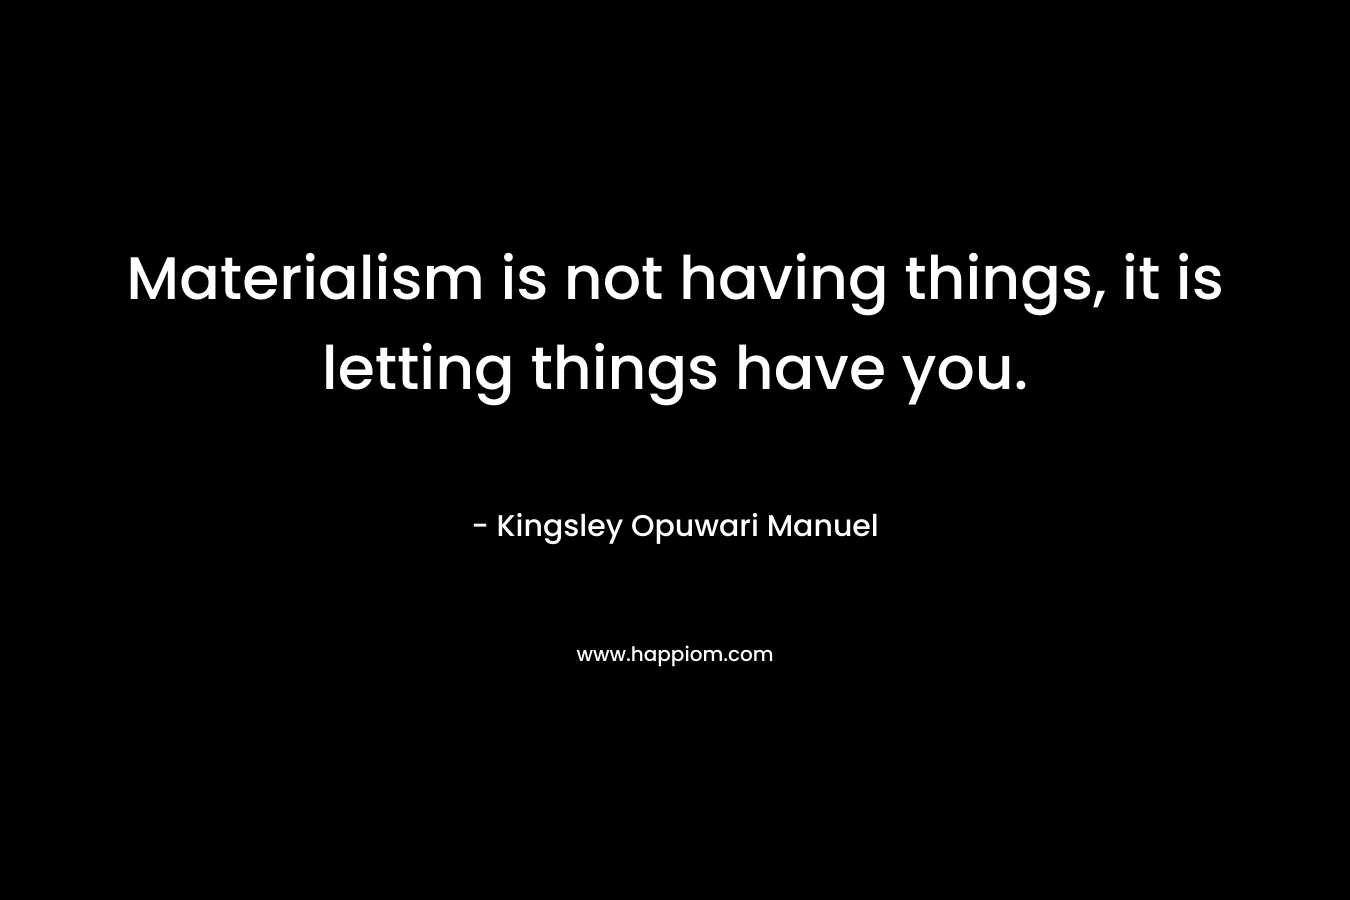 Materialism is not having things, it is letting things have you. – Kingsley Opuwari Manuel